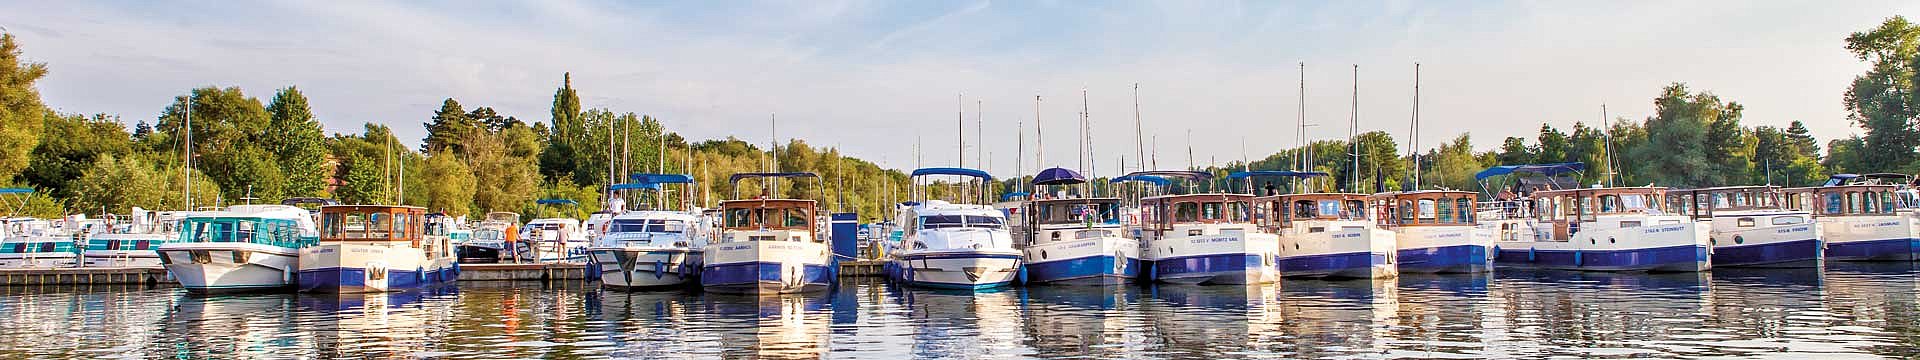 In einem Hafen stehen zahlreiche Hausboote nebeneinander. Es handelt sich umBoote der Marke Kormoran.